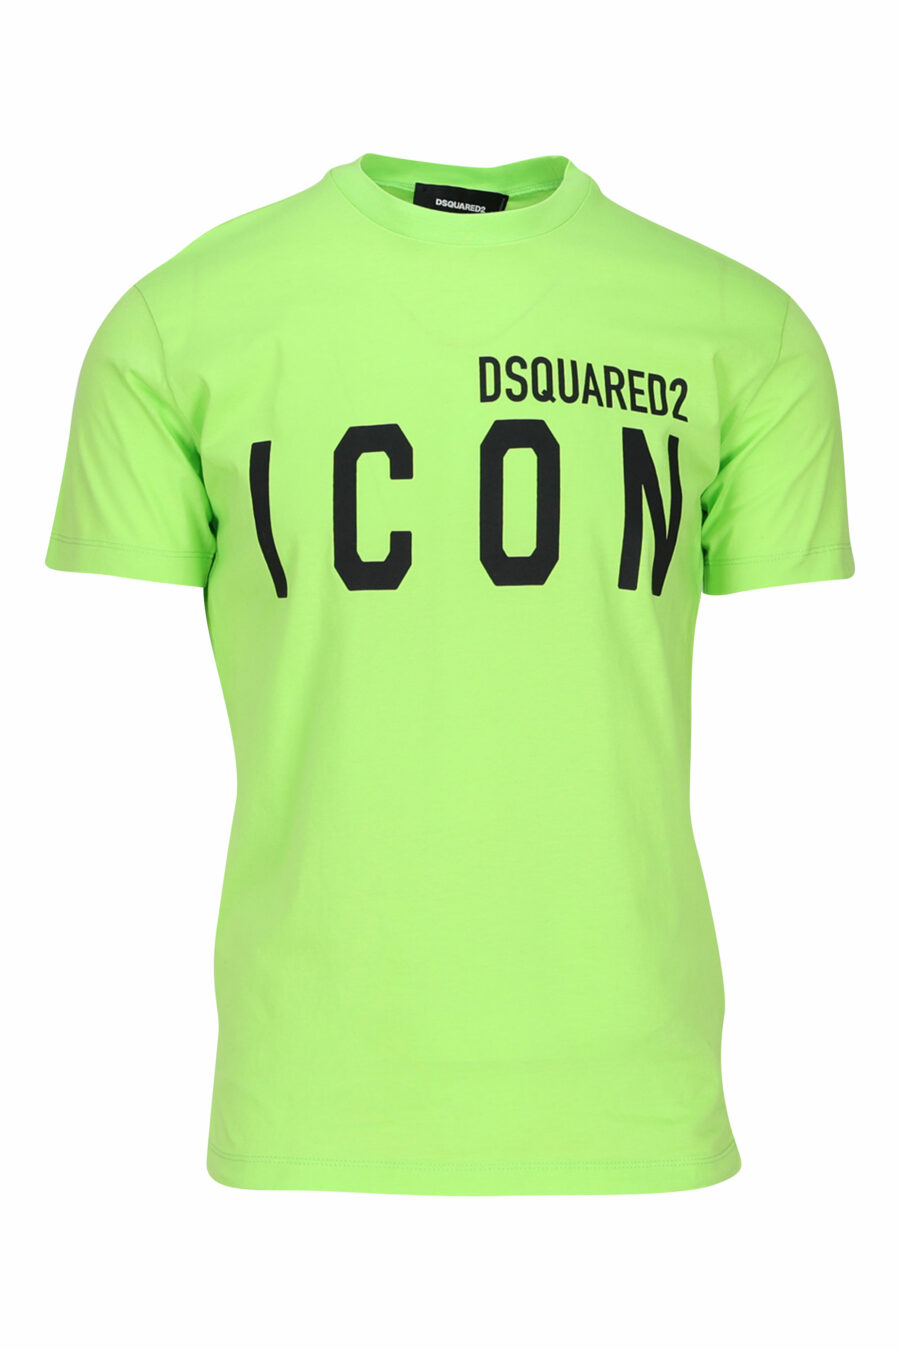 Camiseta verde lima con maxilogo "icon" negro - 8054148035594